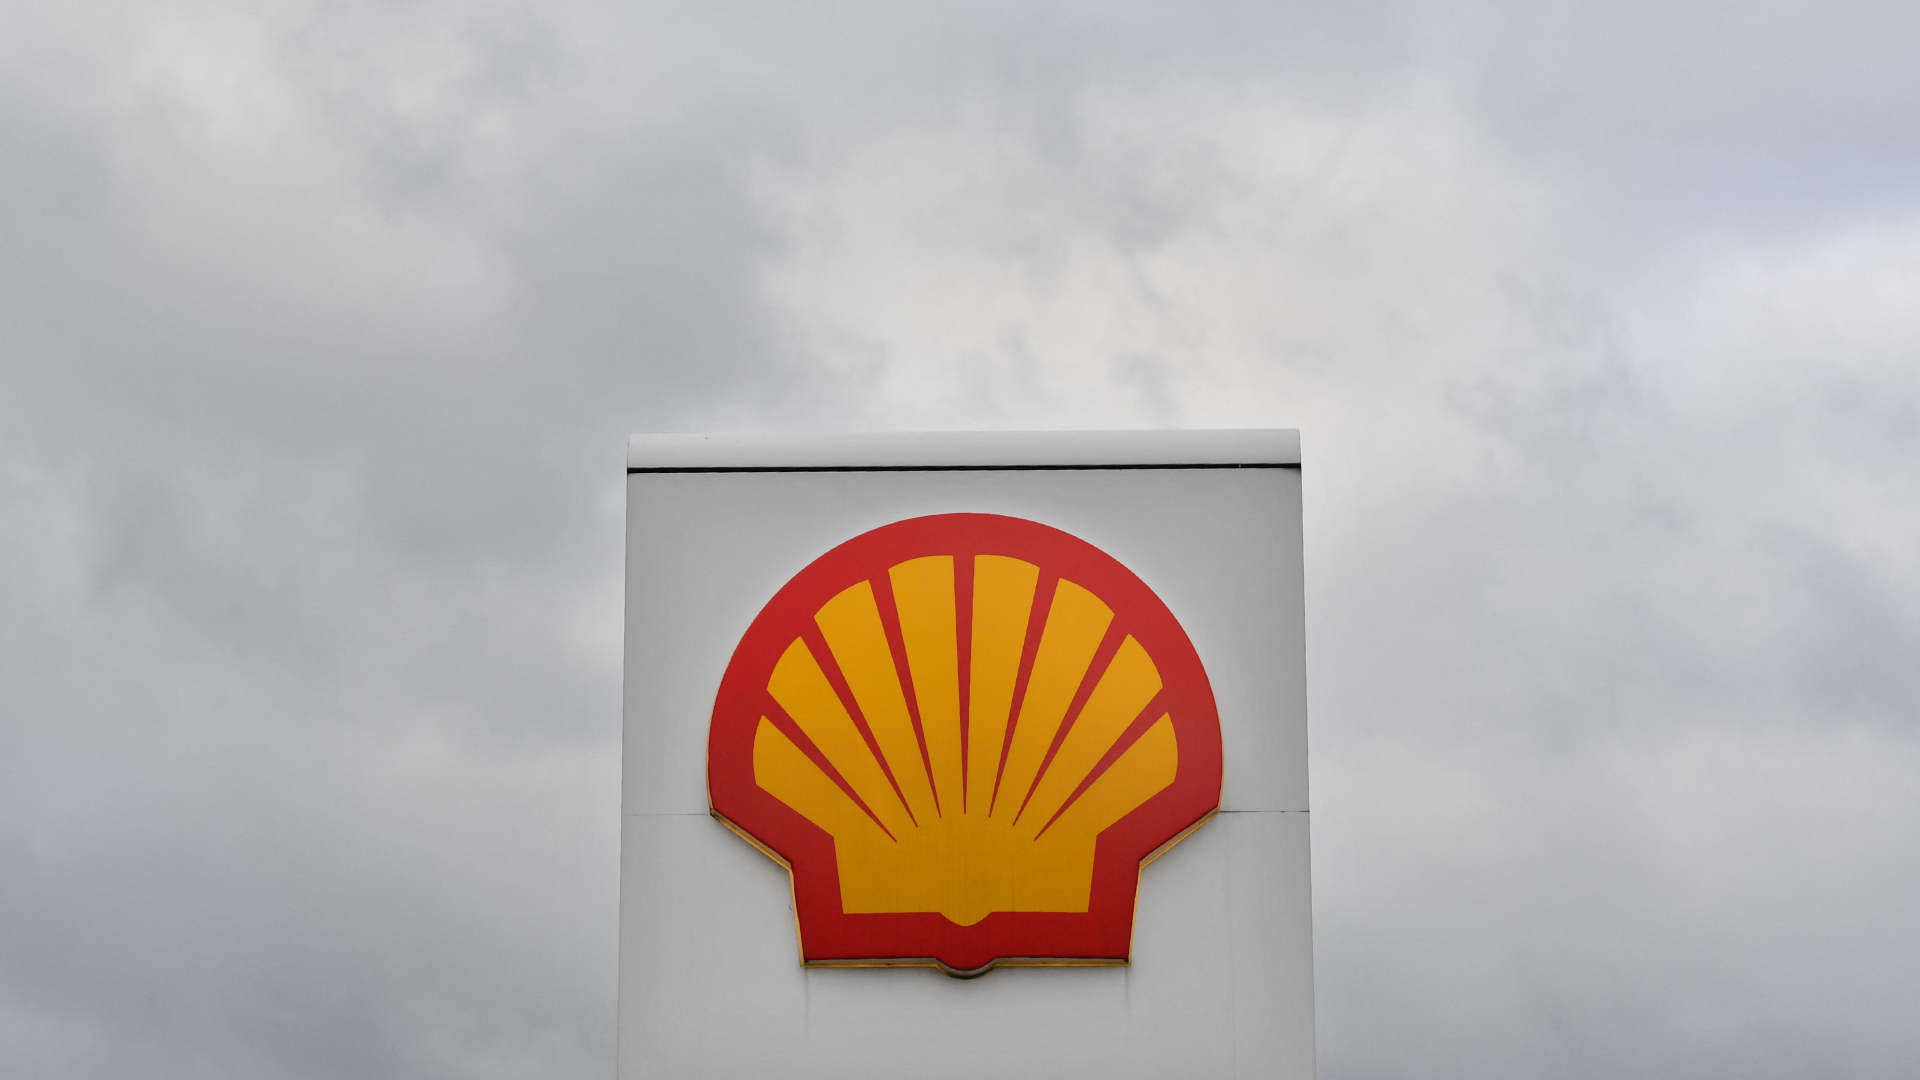 Das Logo des Ölkonzerns Shell vor einem wolkenverhangenen, grauen Himmel.